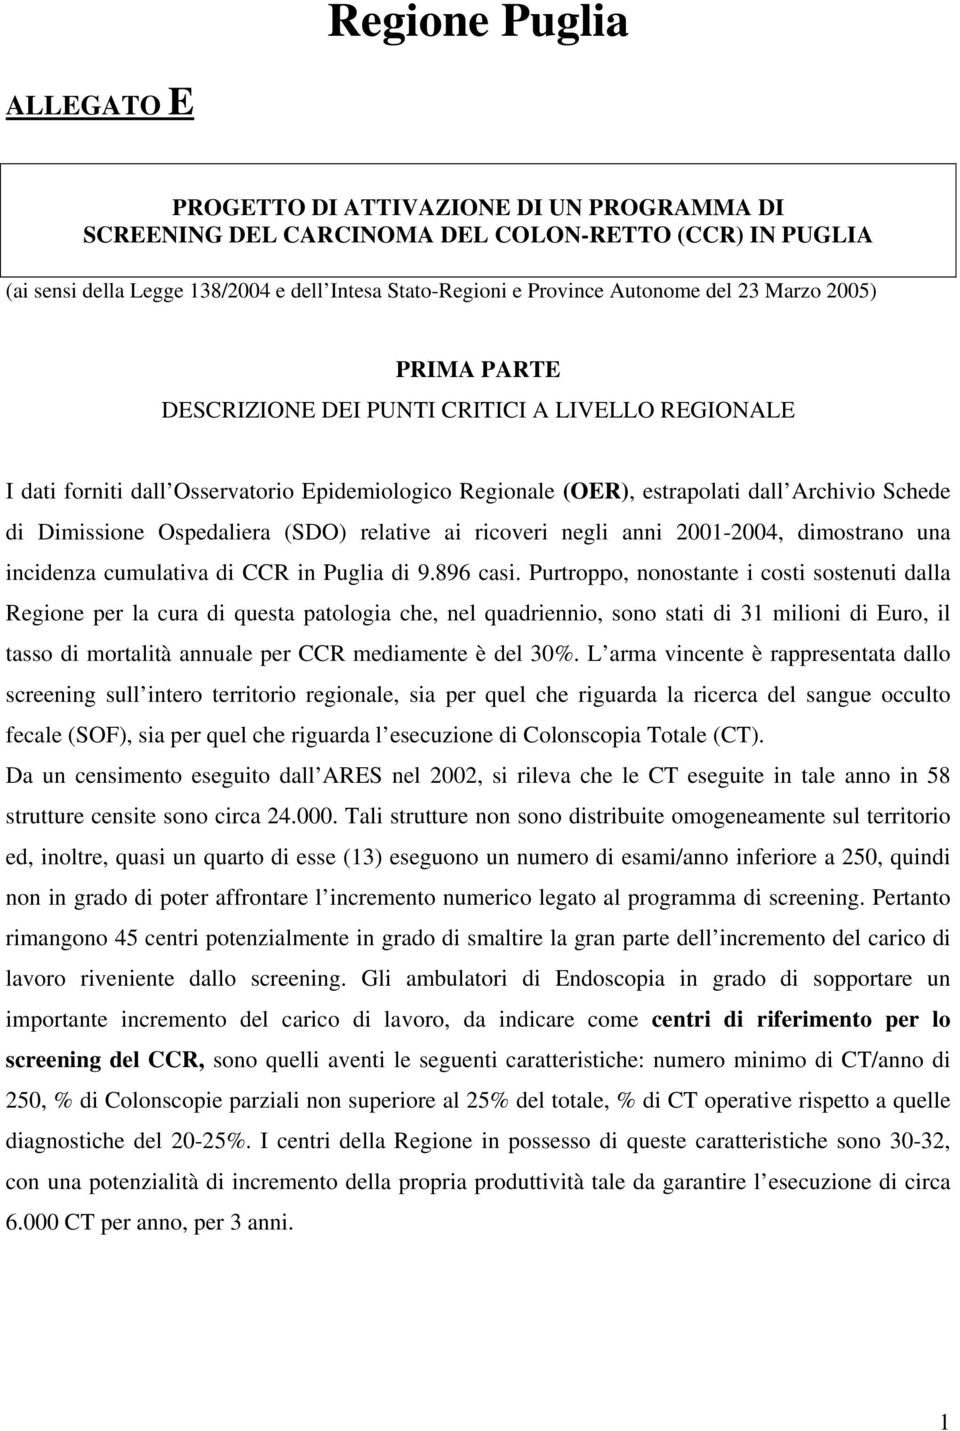 Dimissione Ospedaliera (SDO) relative ai ricoveri negli anni 2001-2004, dimostrano una incidenza cumulativa di CCR in Puglia di 9.896 casi.